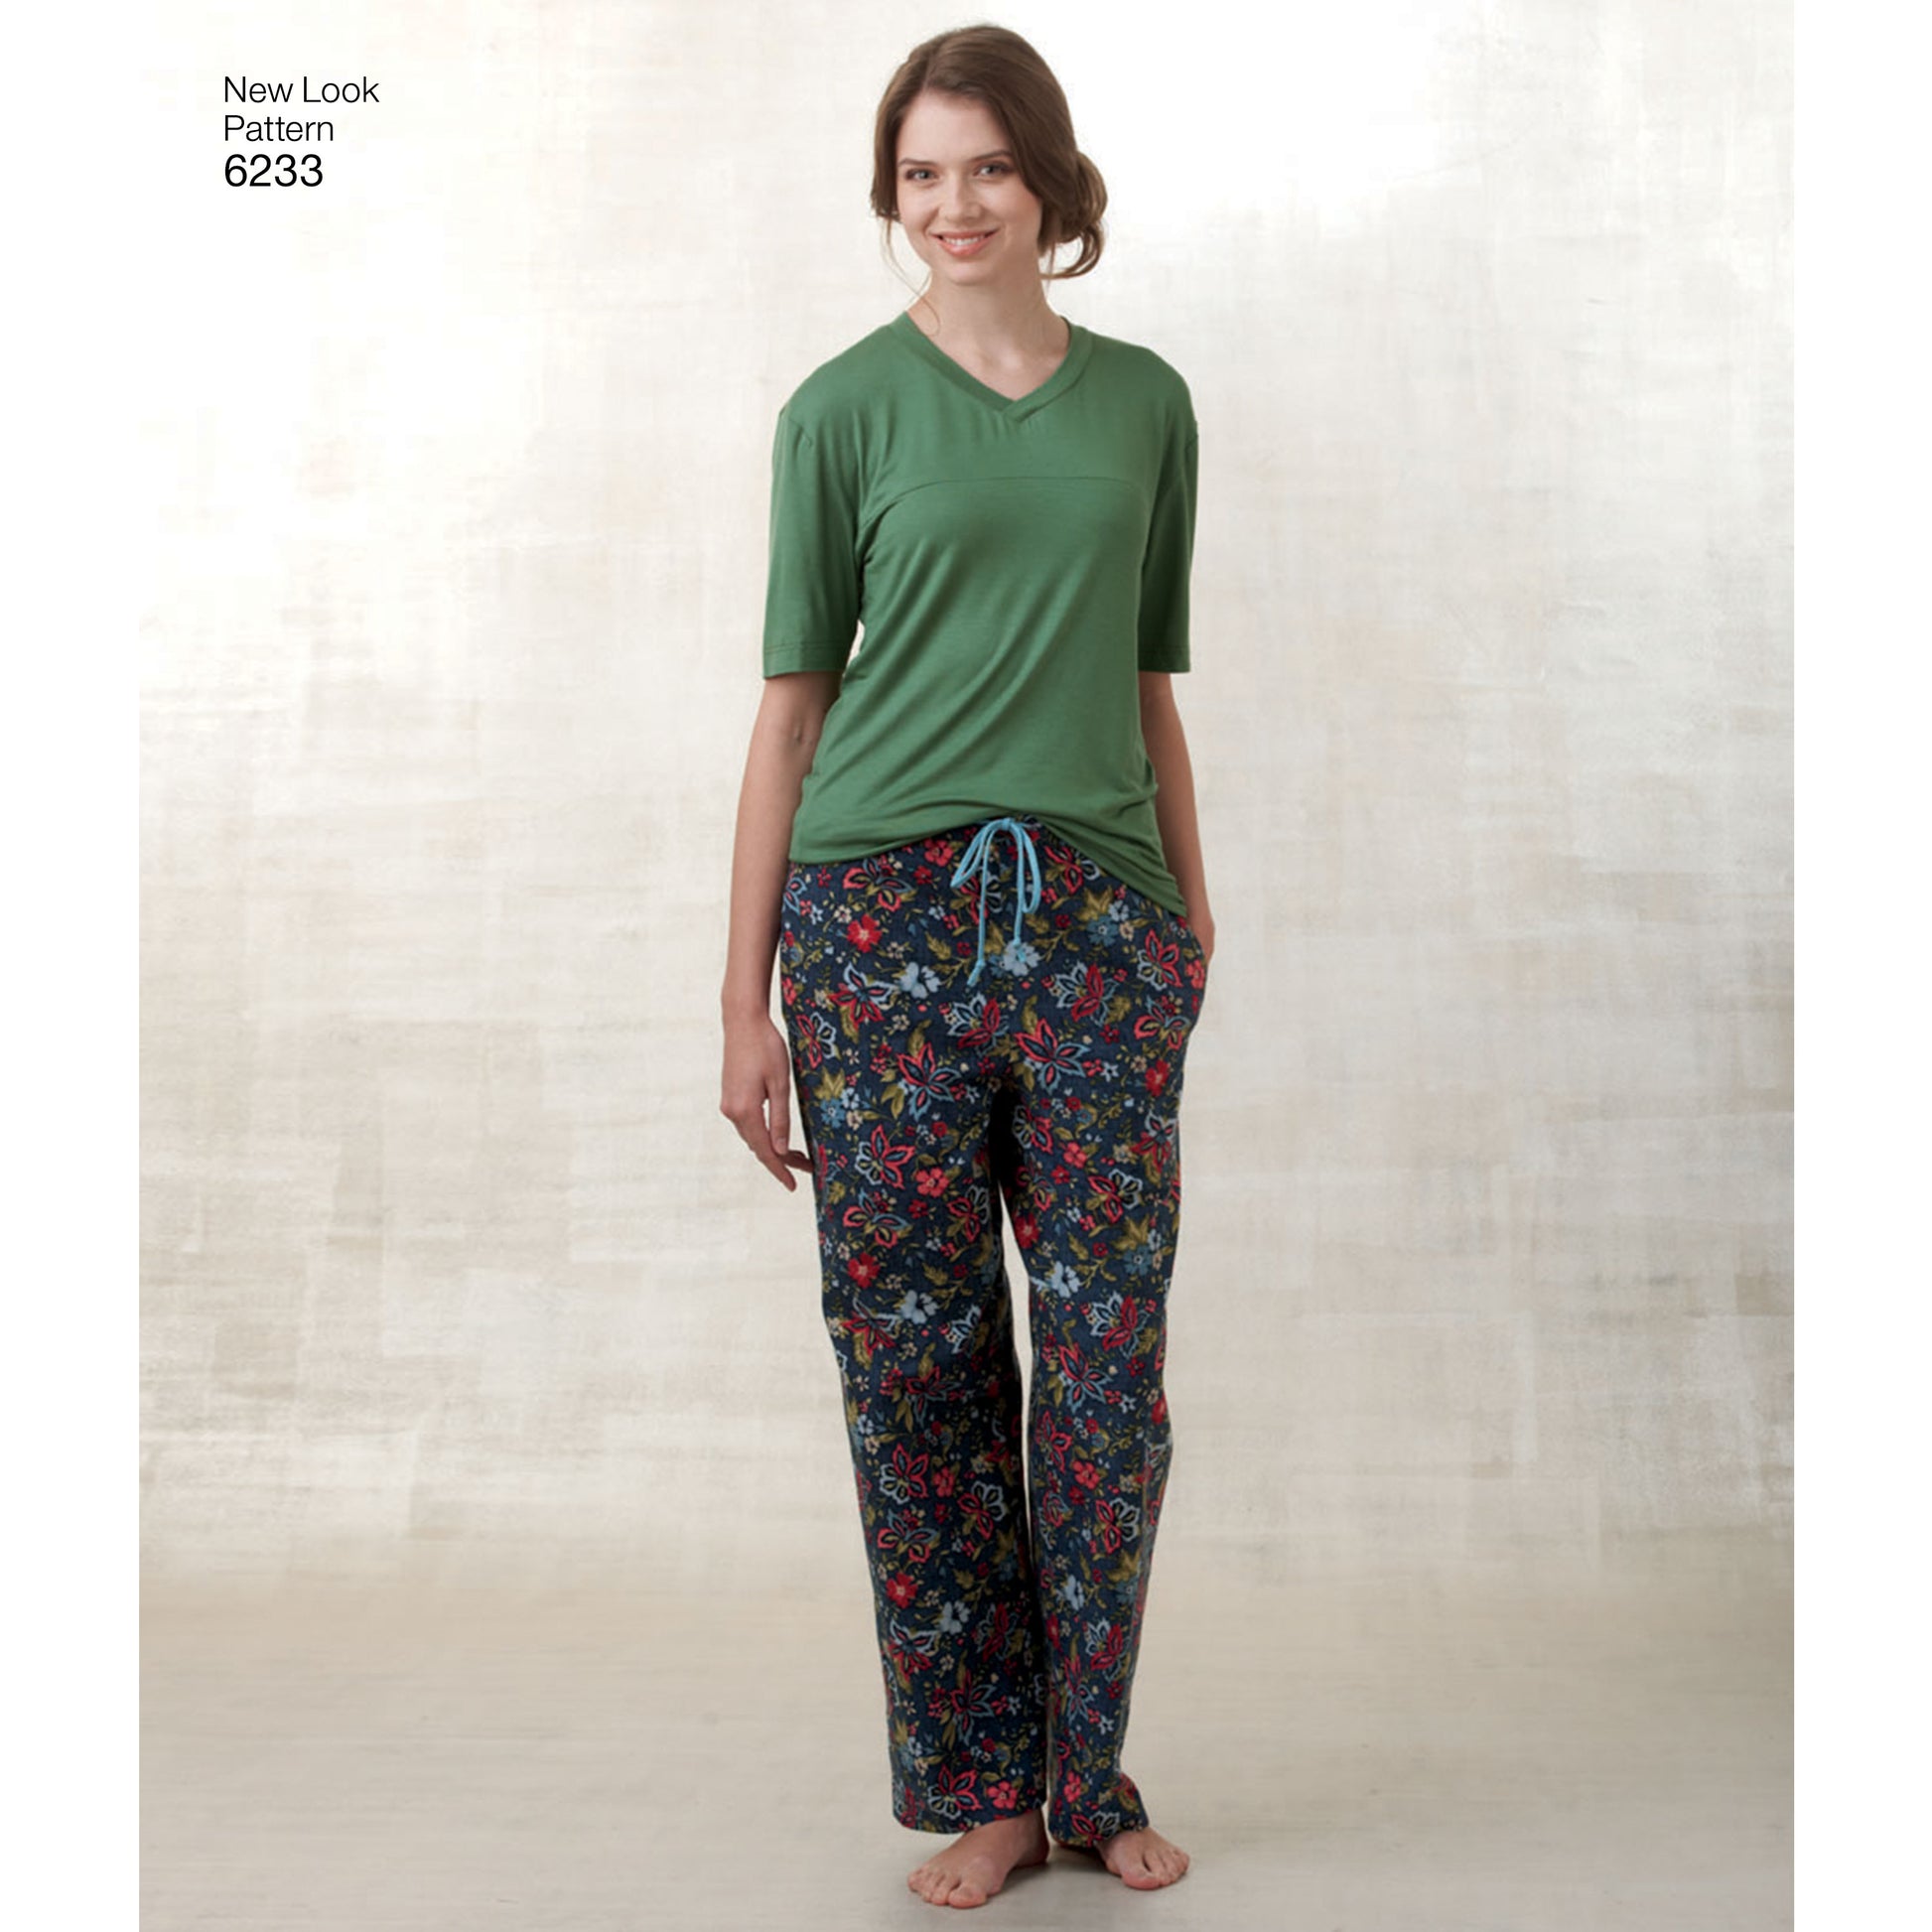 Symönster New Look 6233 - Top Byxa Pyjamas - Dam Herr | Bild 2